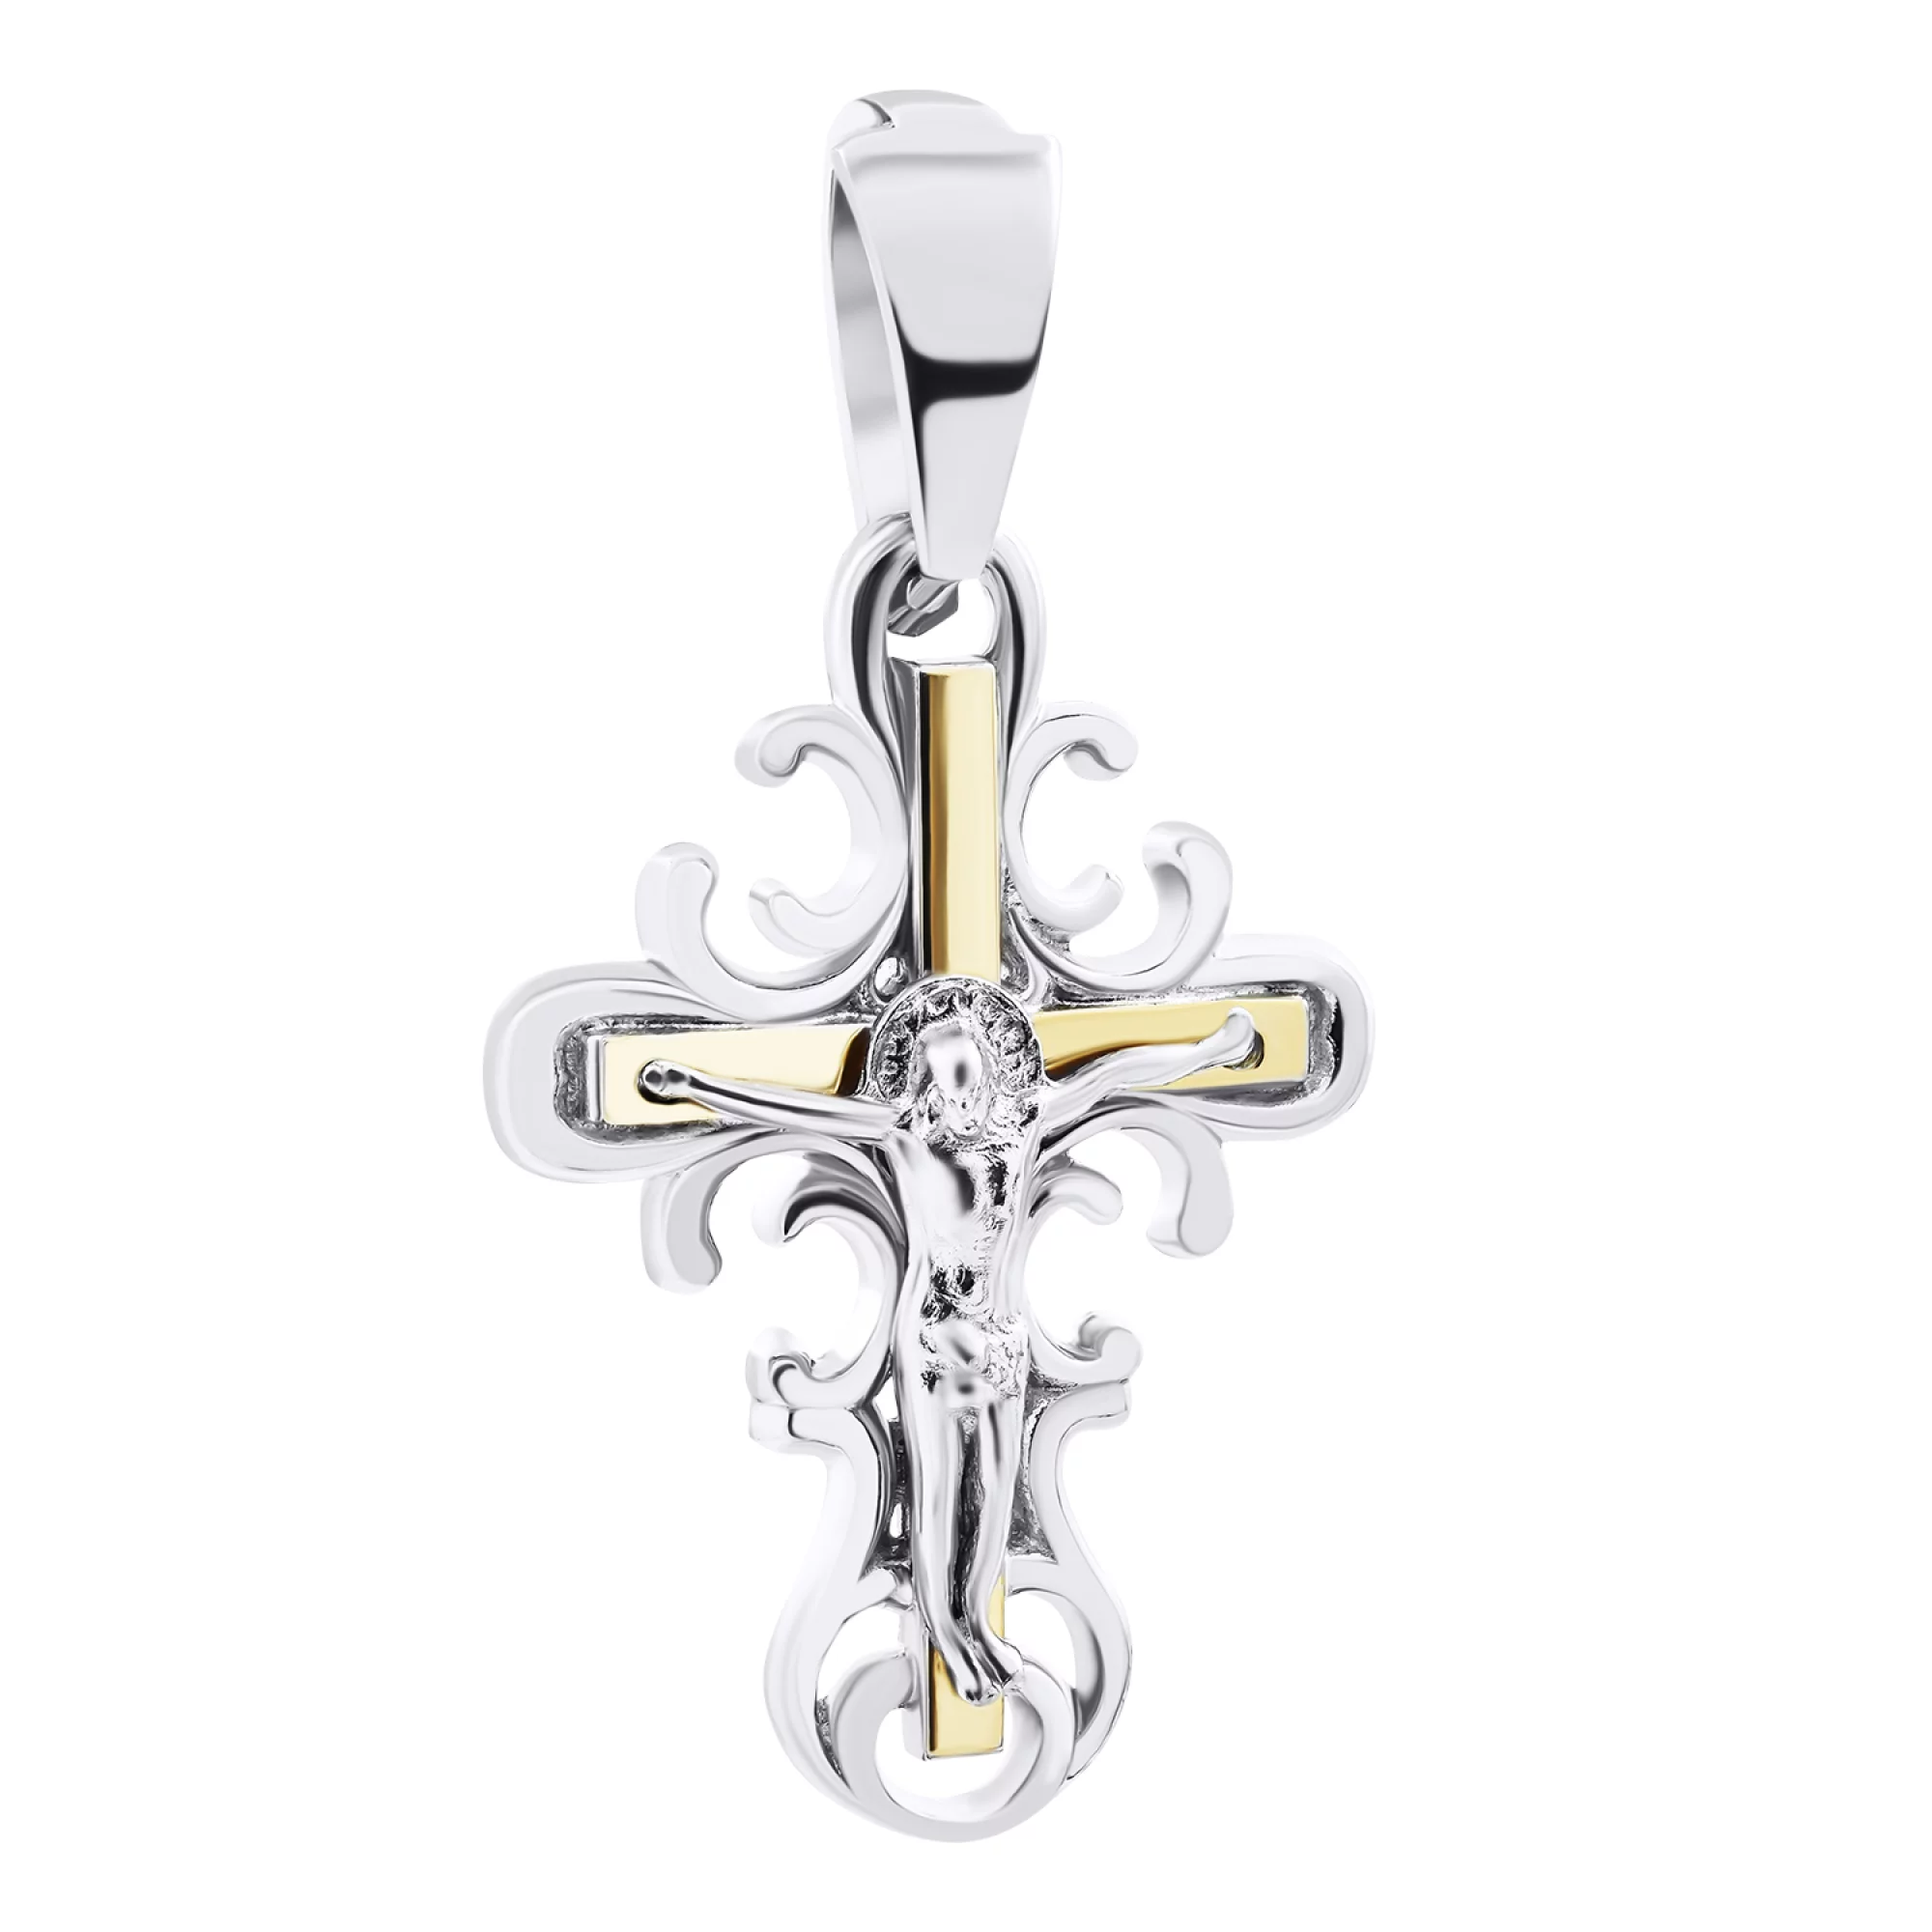 Крестик из серебра с позолотой и завитками - 1520350 – изображение 1